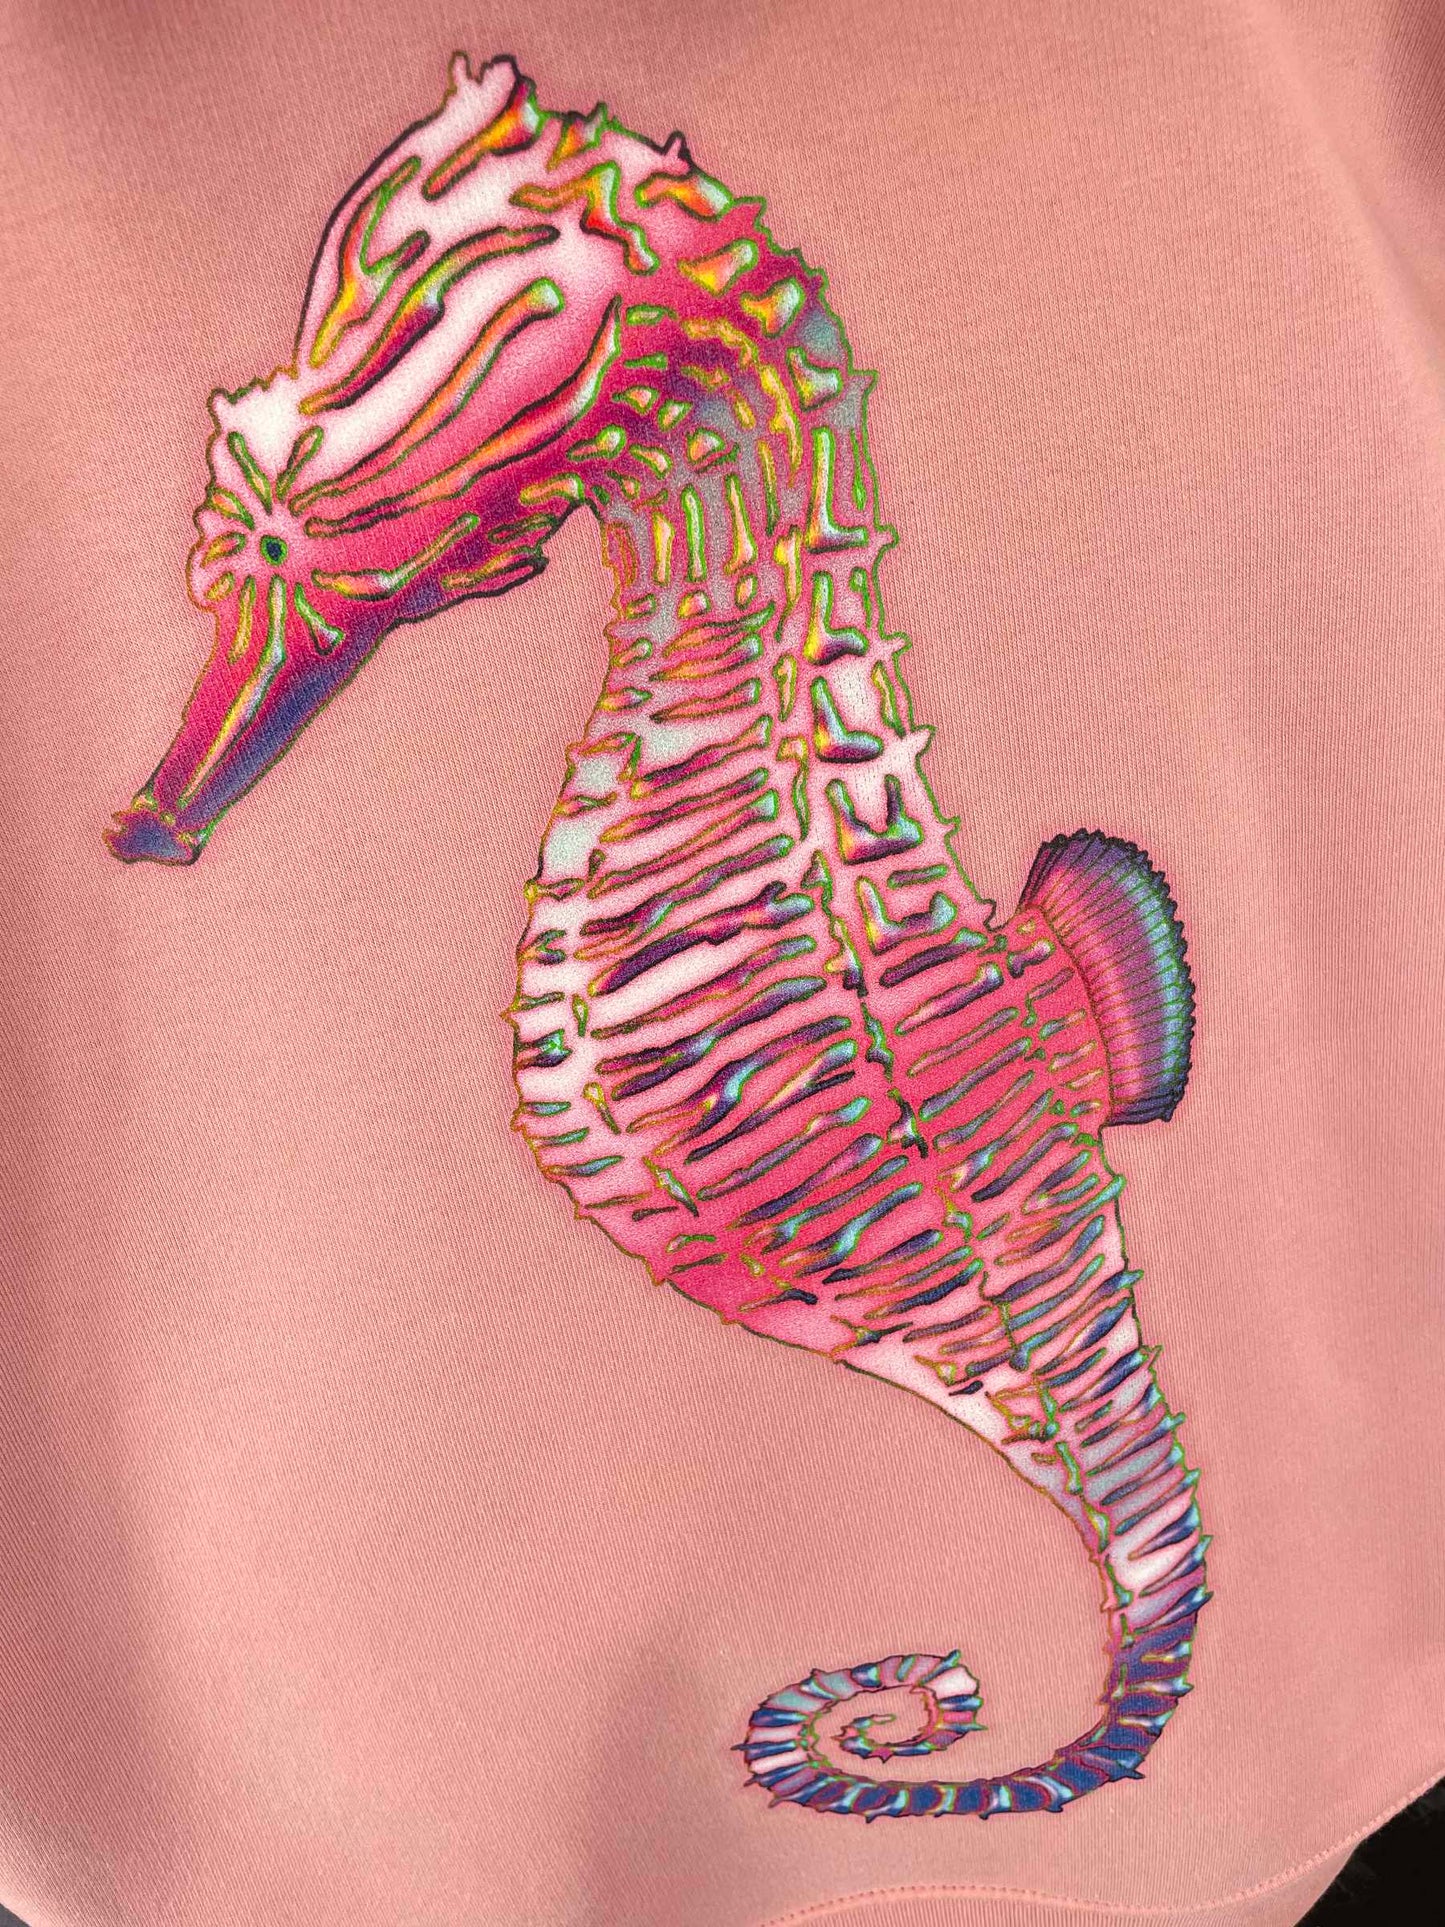 Women's Pink Seahorse Hoody - Pink Hoodie